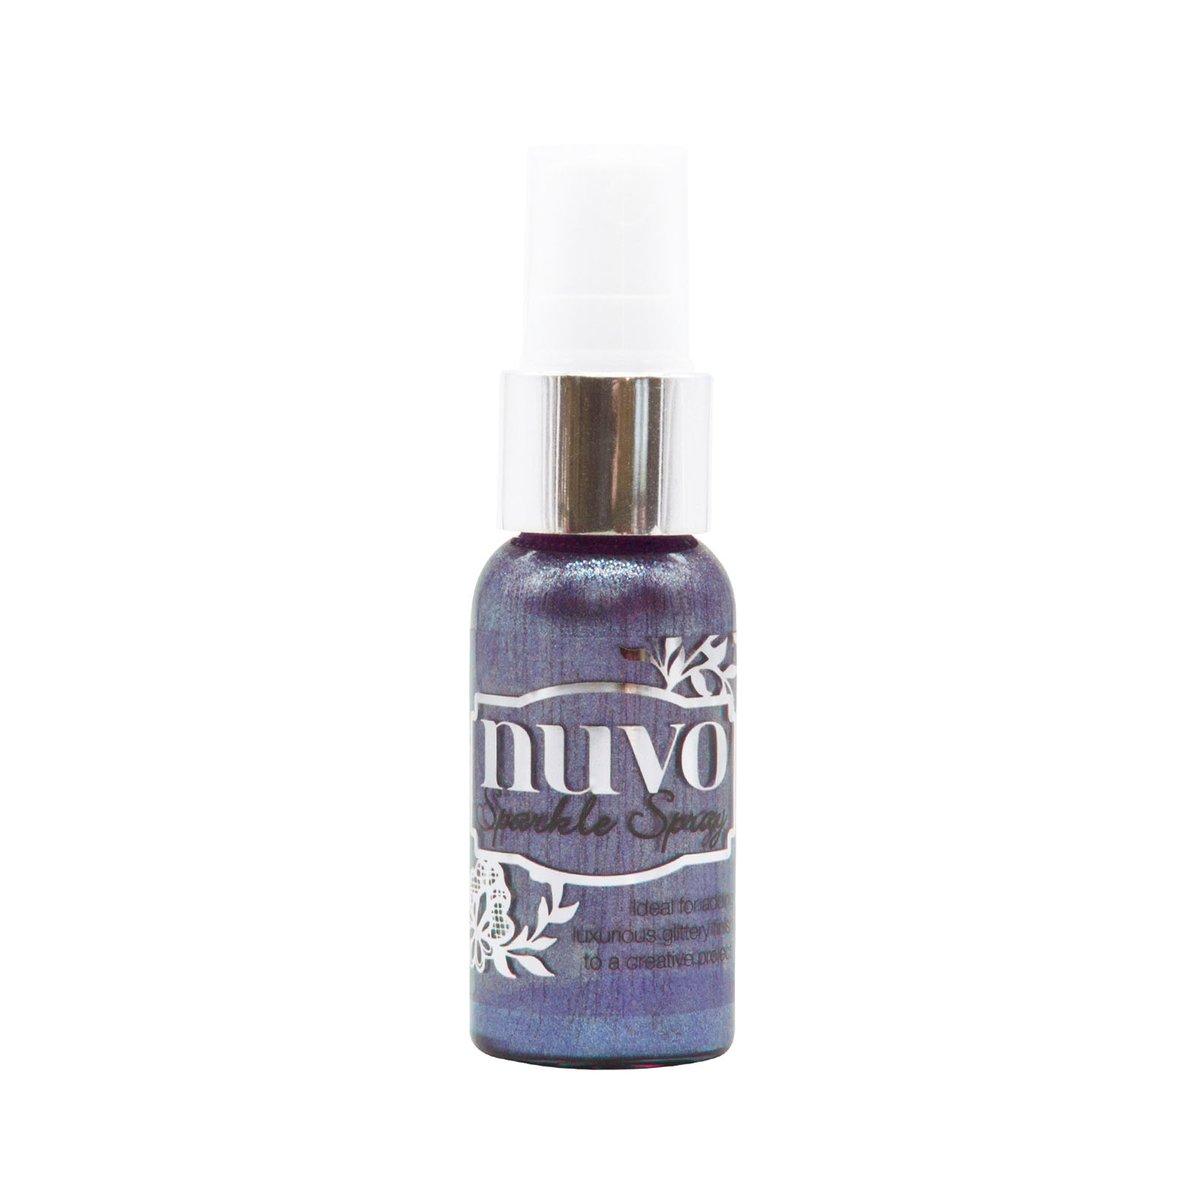 Nuvo | Sparkle spray Lavender lining